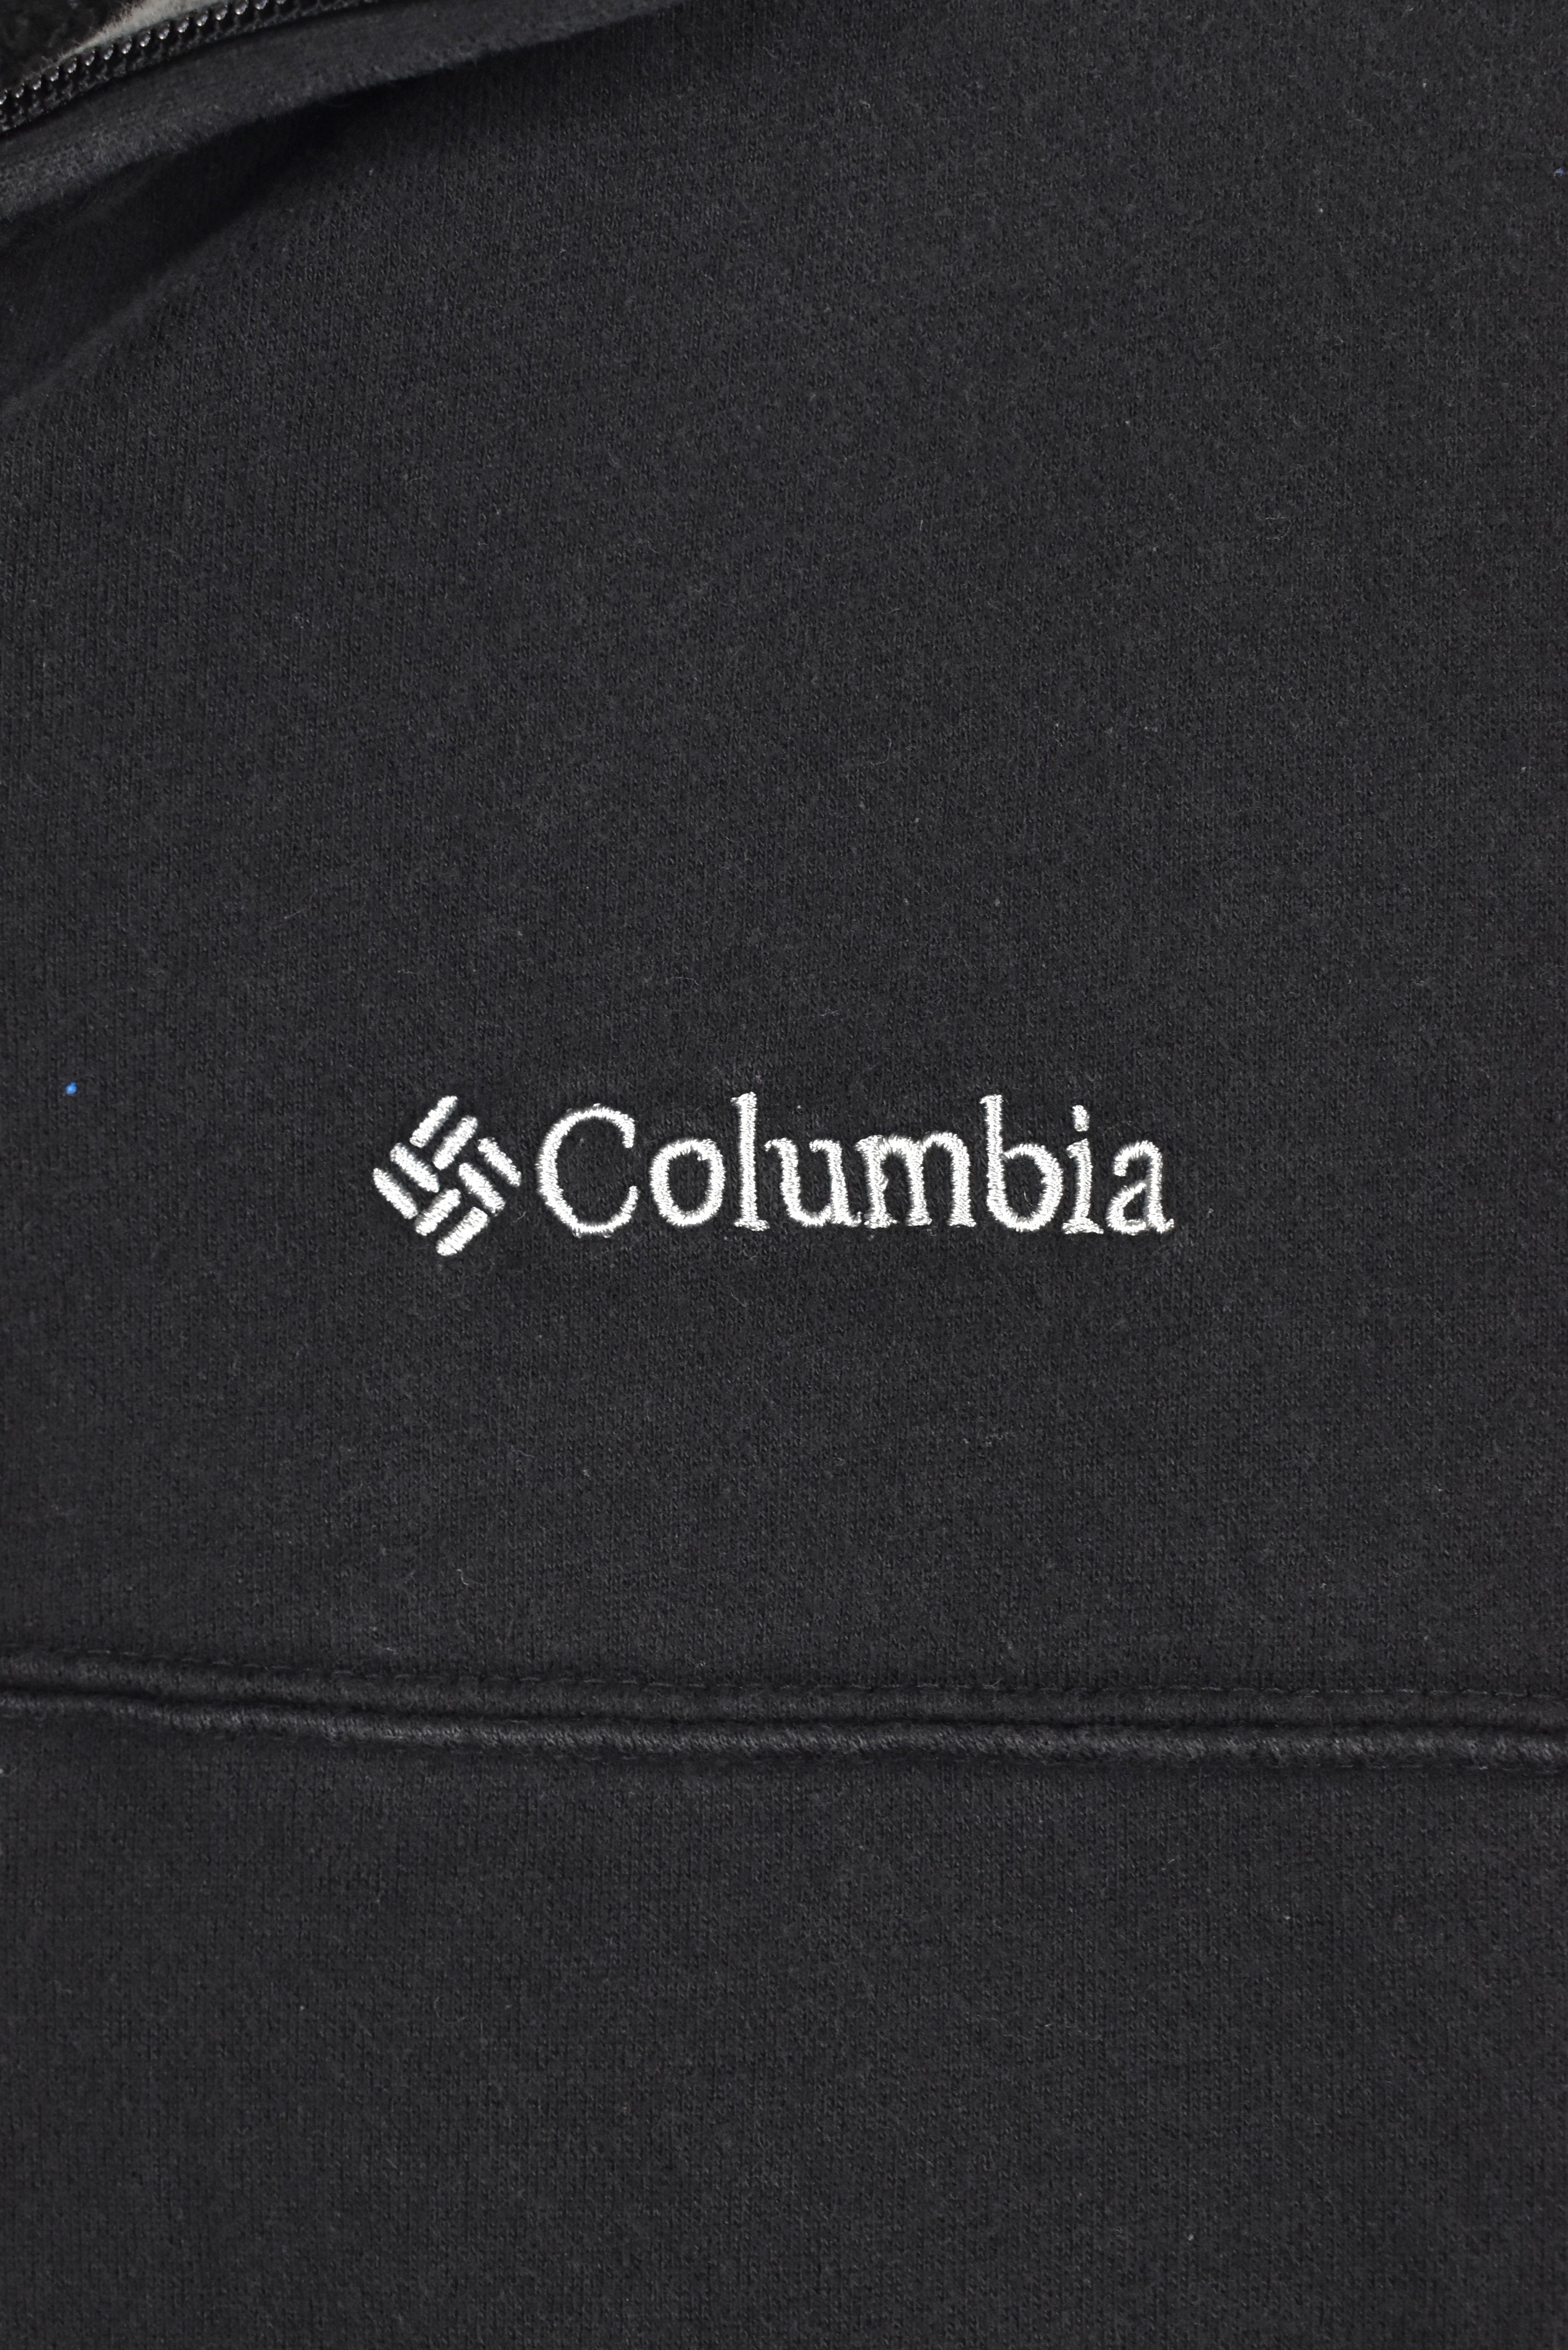 Vintage Columbia sweatshirt, black embroidered 1/4 zip jumper - AU Large COLUMBIA